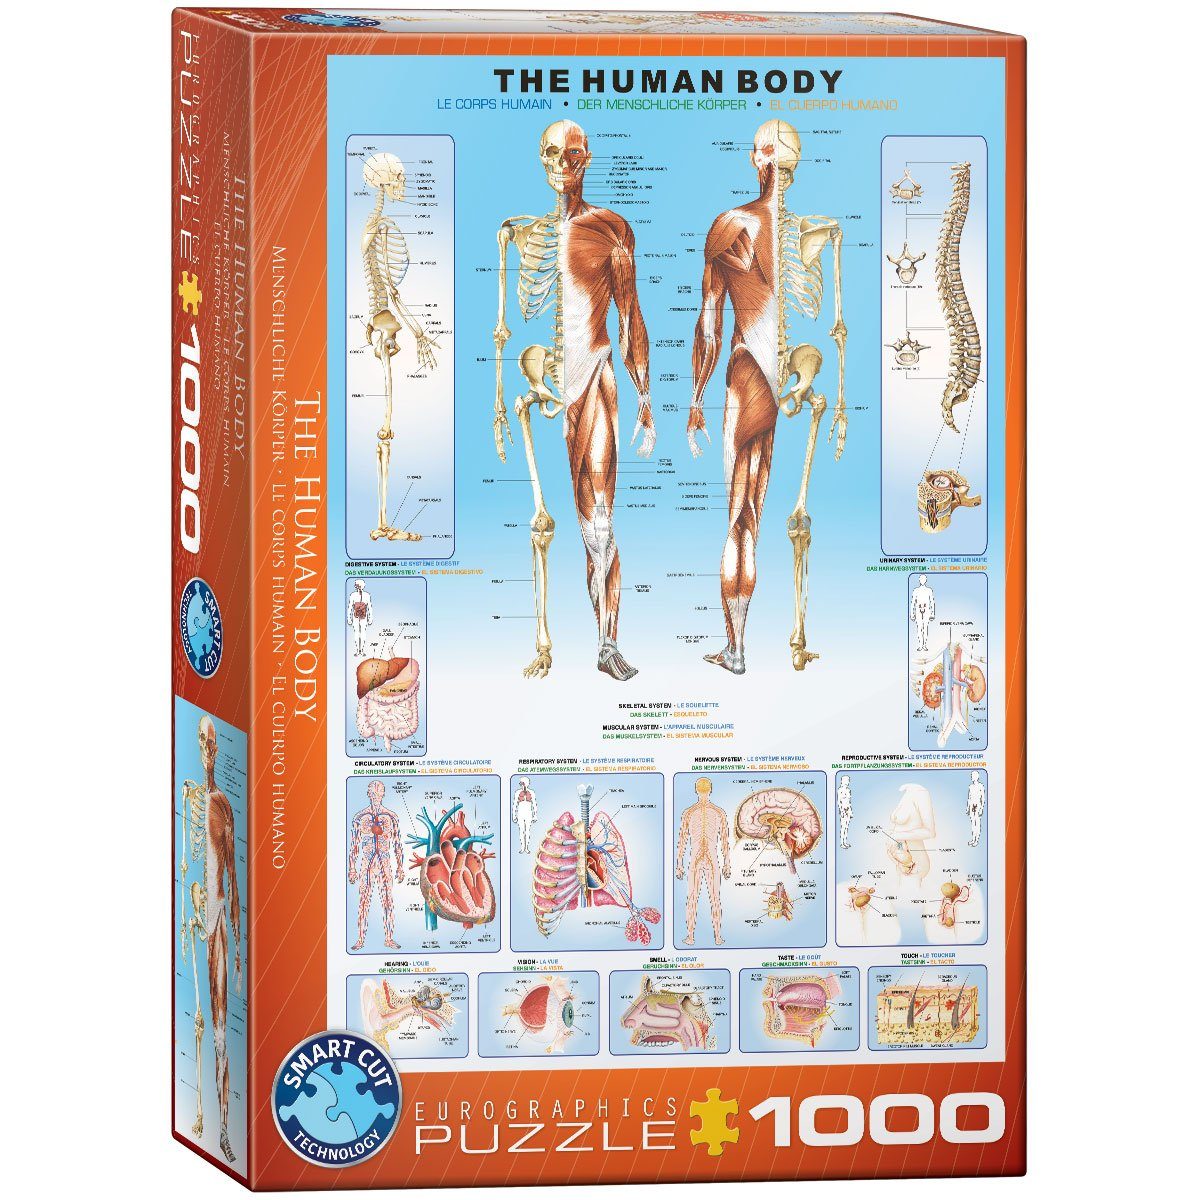 Puzzle 6000-1000 Der 1000 EUROGRAPHICS Puzzleteile EuroGraphics menschiche Körper,